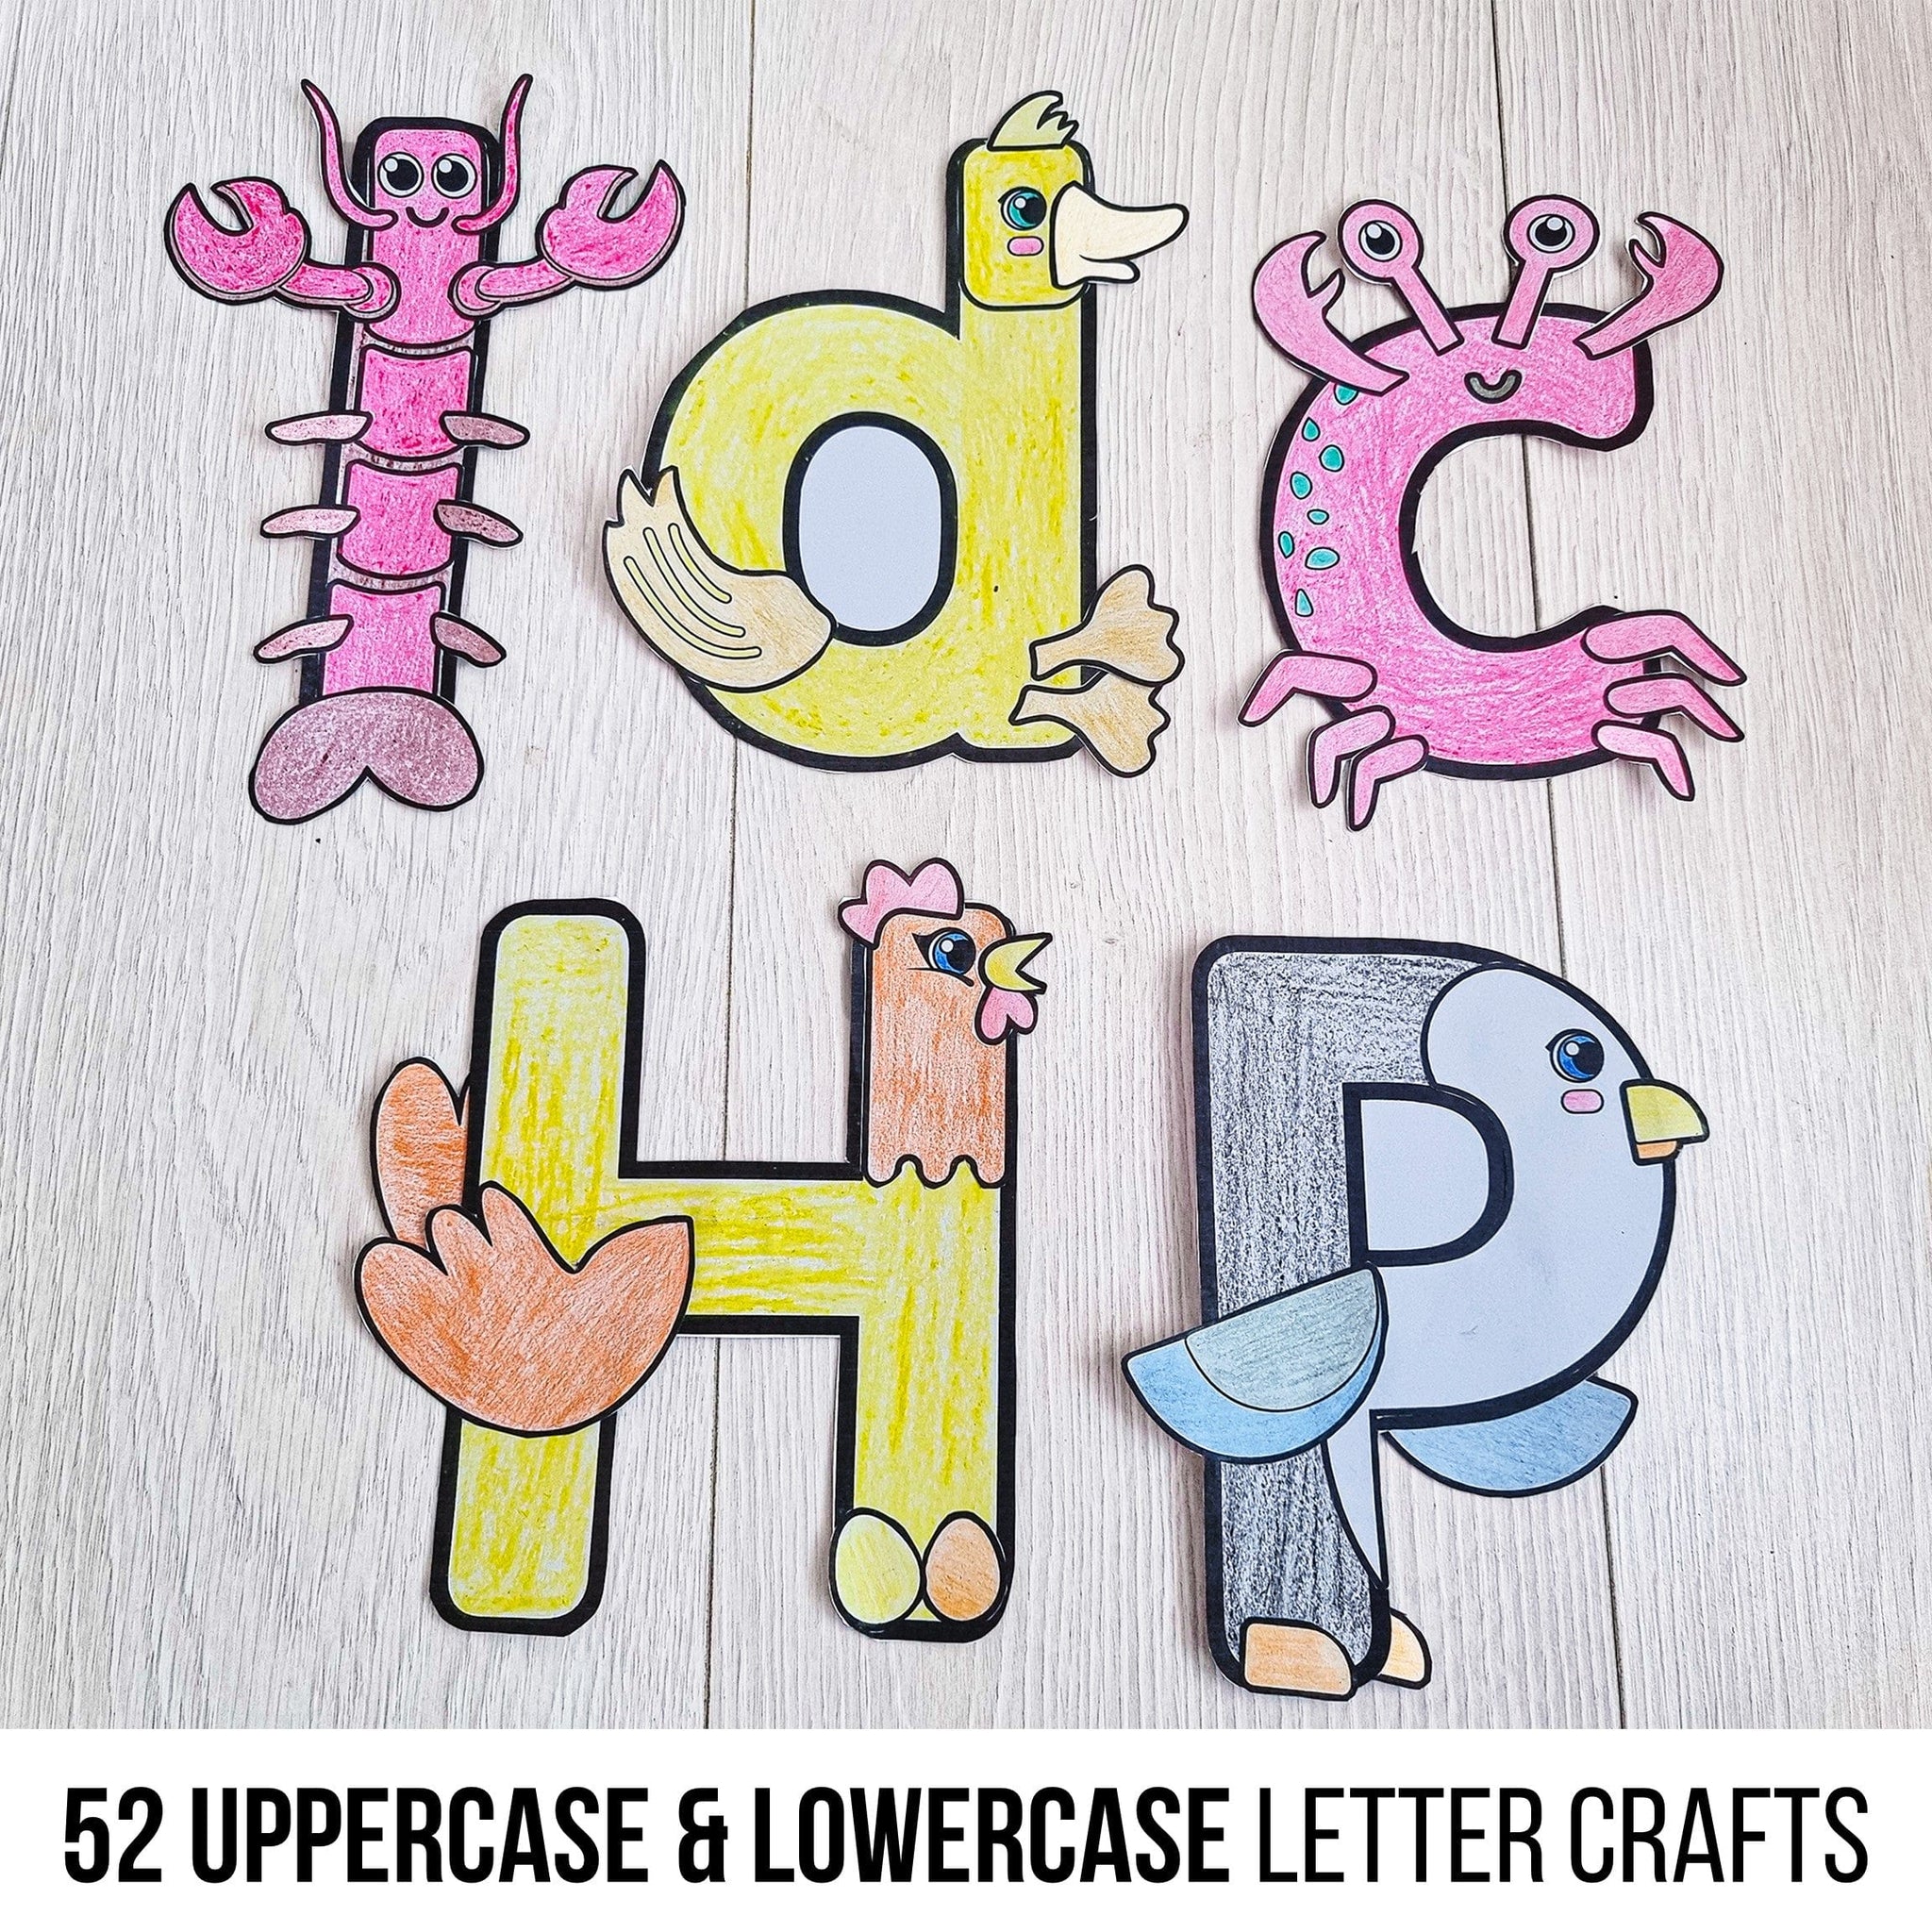 alphabet letter crafts